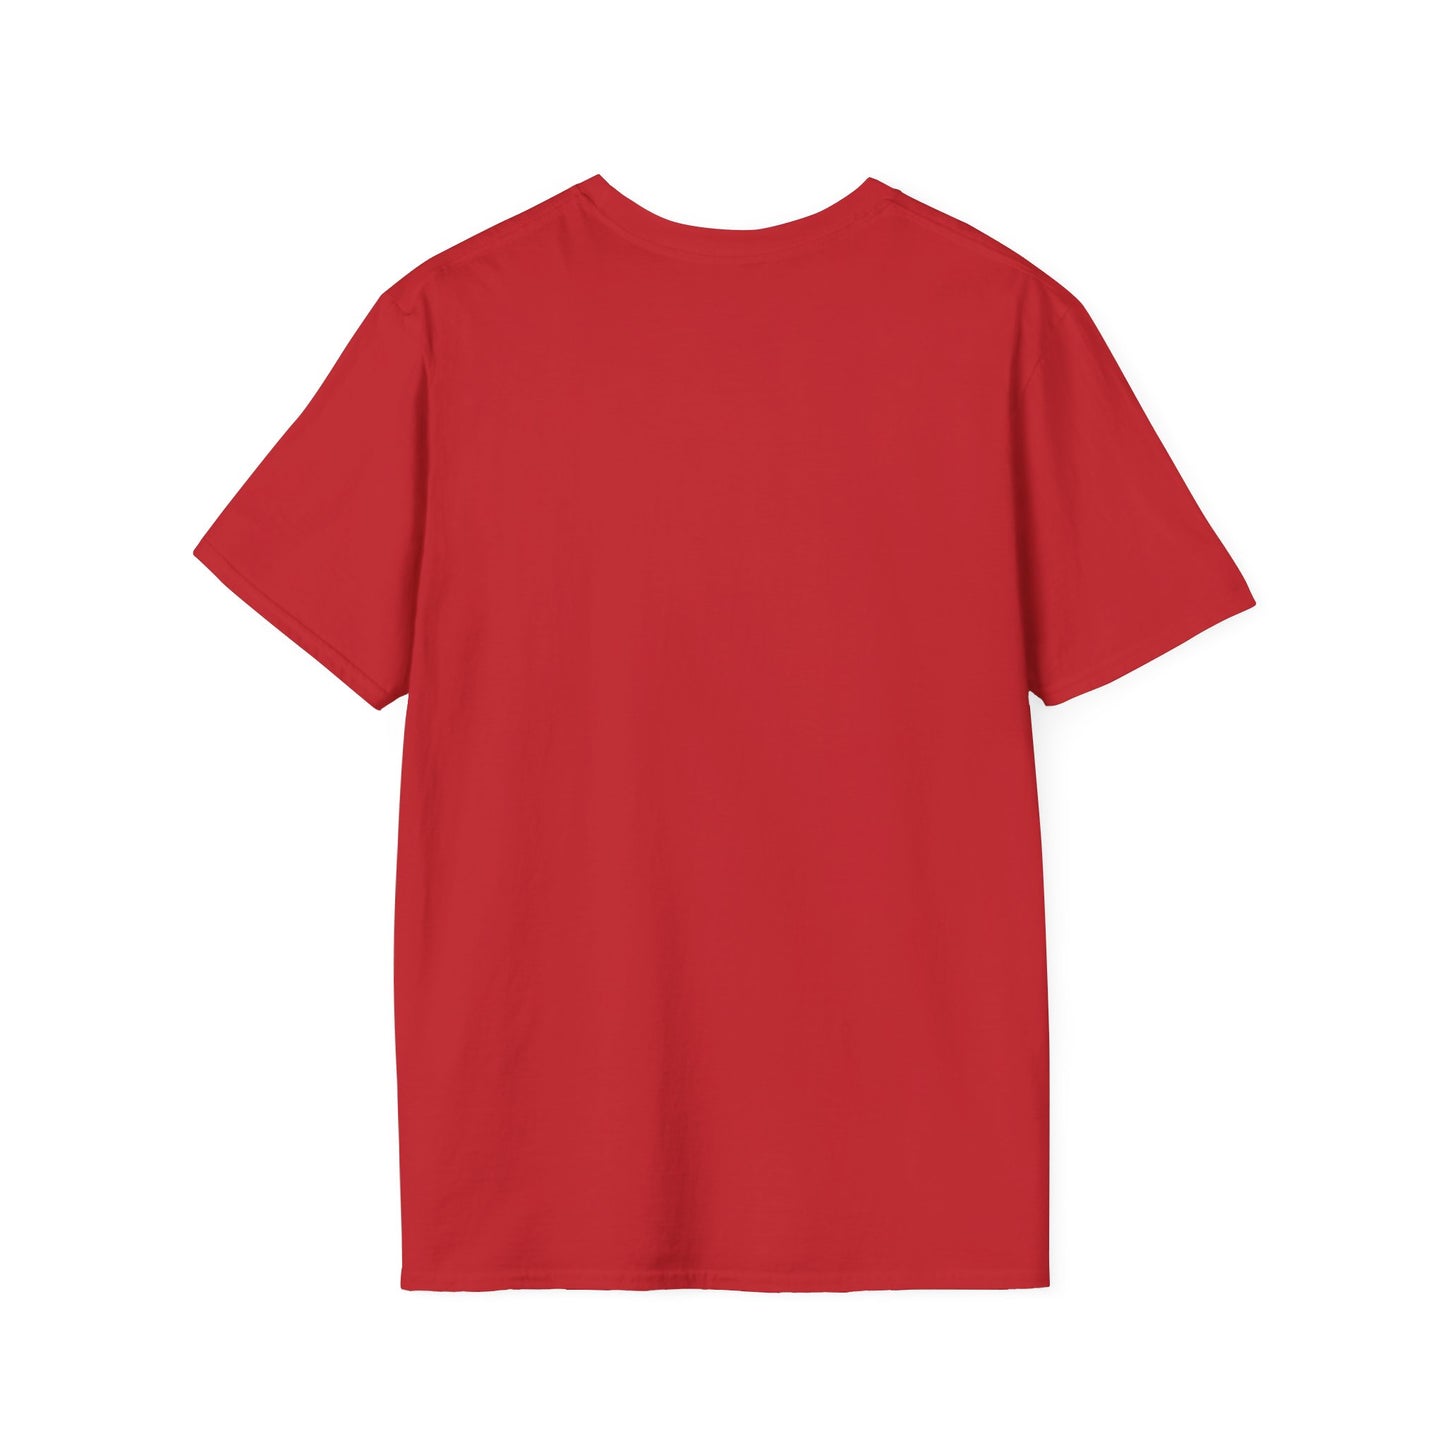 The Thinker Unisex Softstyle T-Shirt